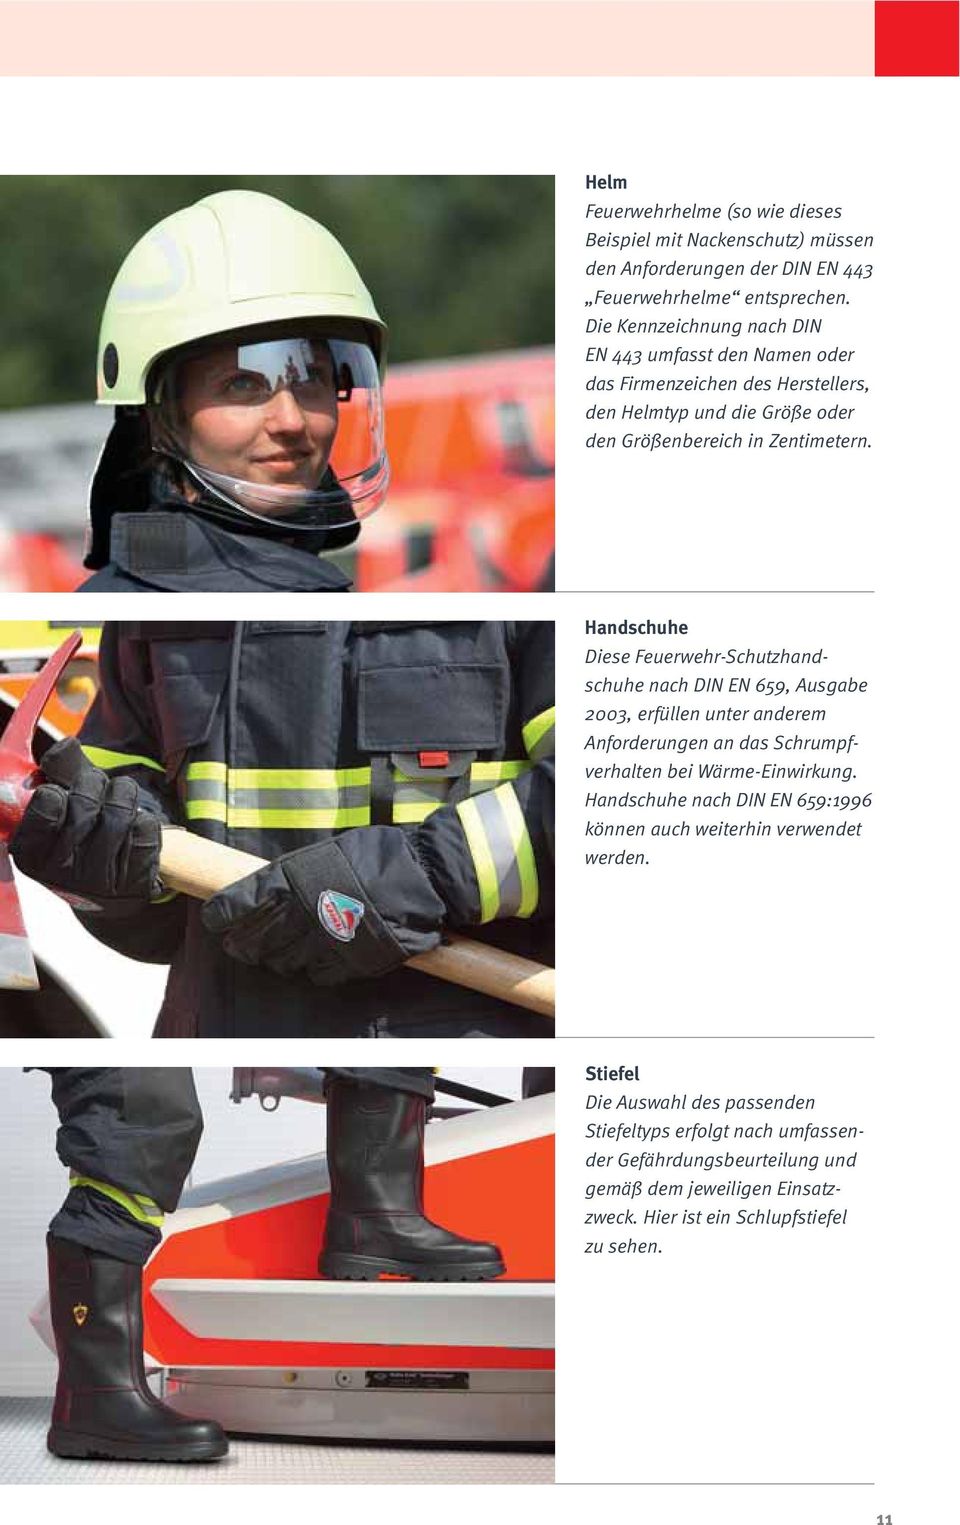 Handschuhe Diese Feuerwehr-Schutzhandschuhe nach DIN EN 659, Ausgabe 2003, erfüllen unter anderem Anforderungen an das Schrumpfverhalten bei Wärme-Einwirkung.